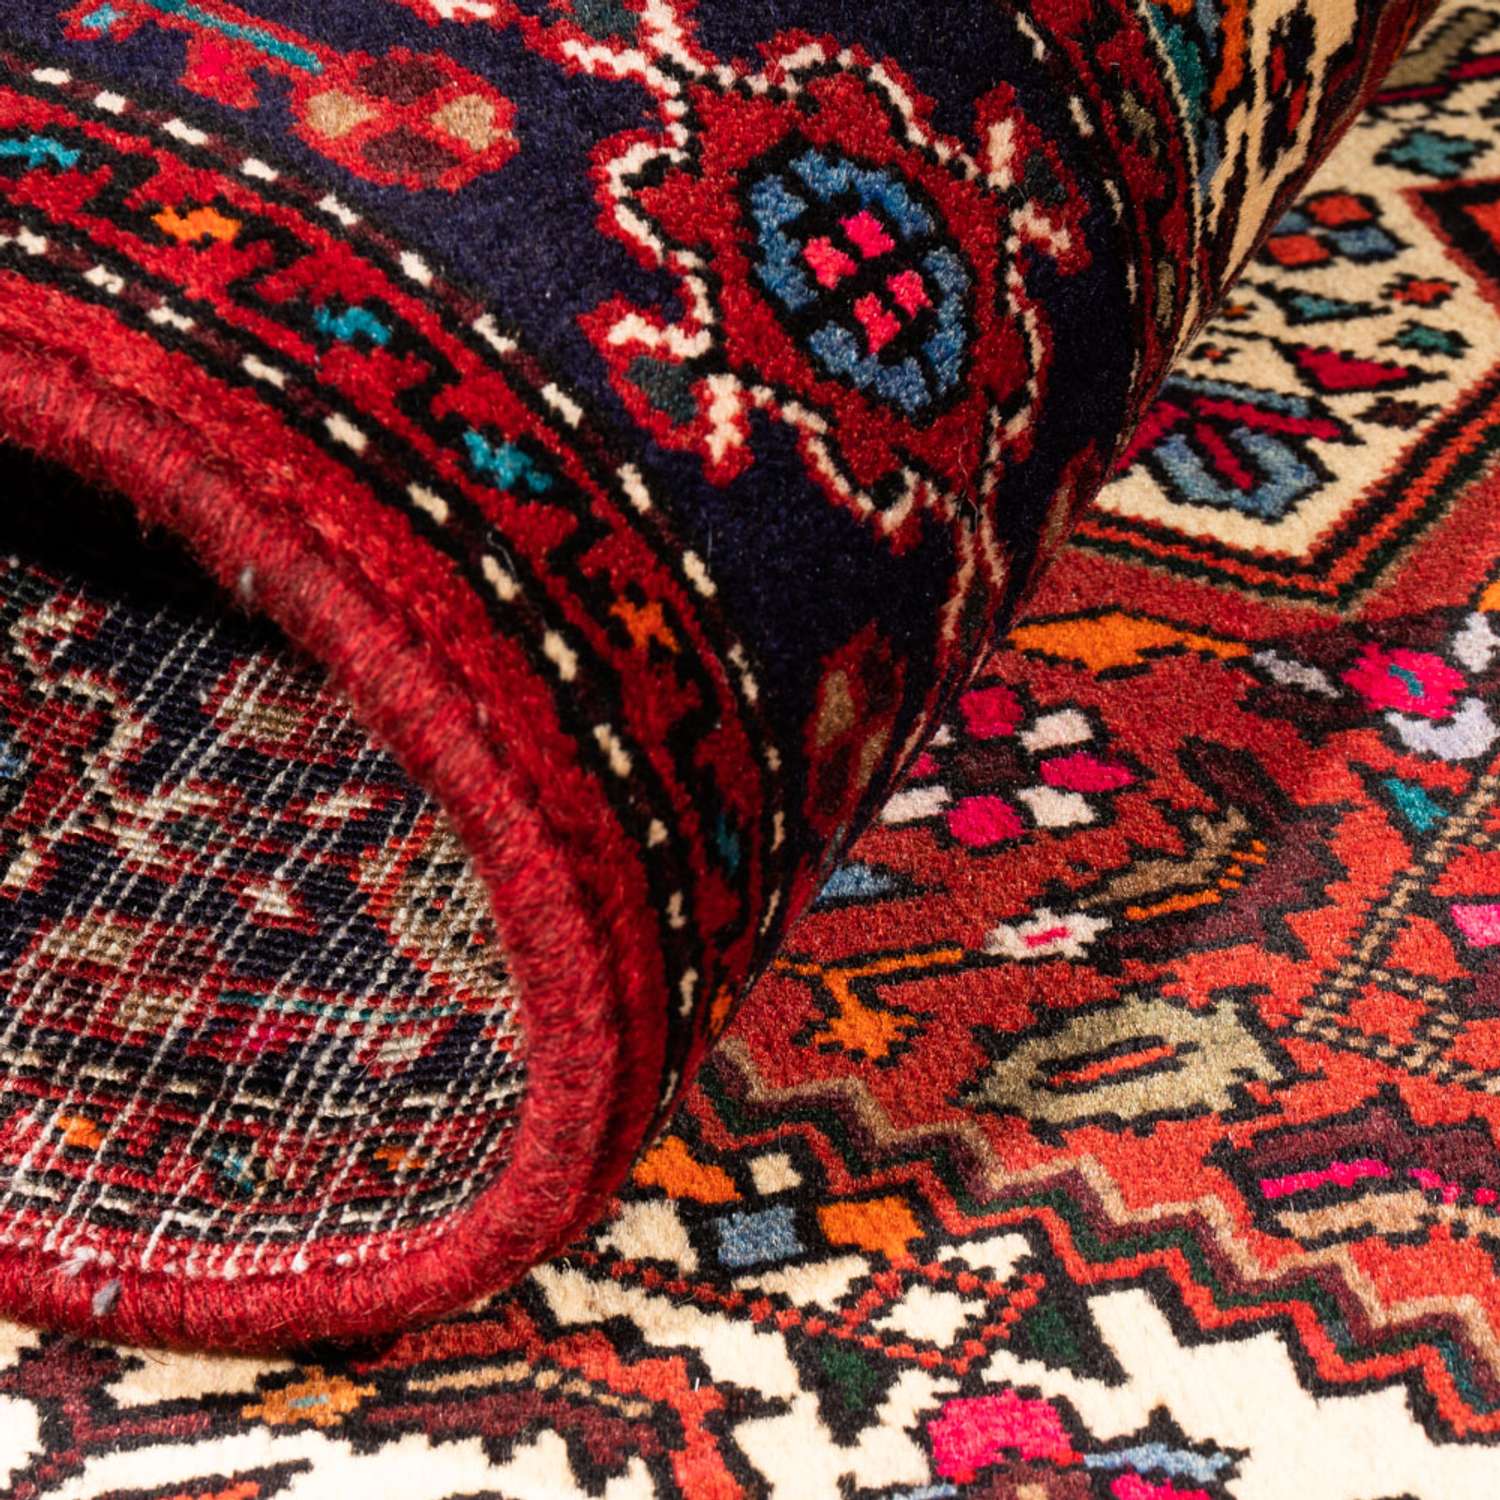 Persisk teppe - Nomadisk - 148 x 100 cm - rød